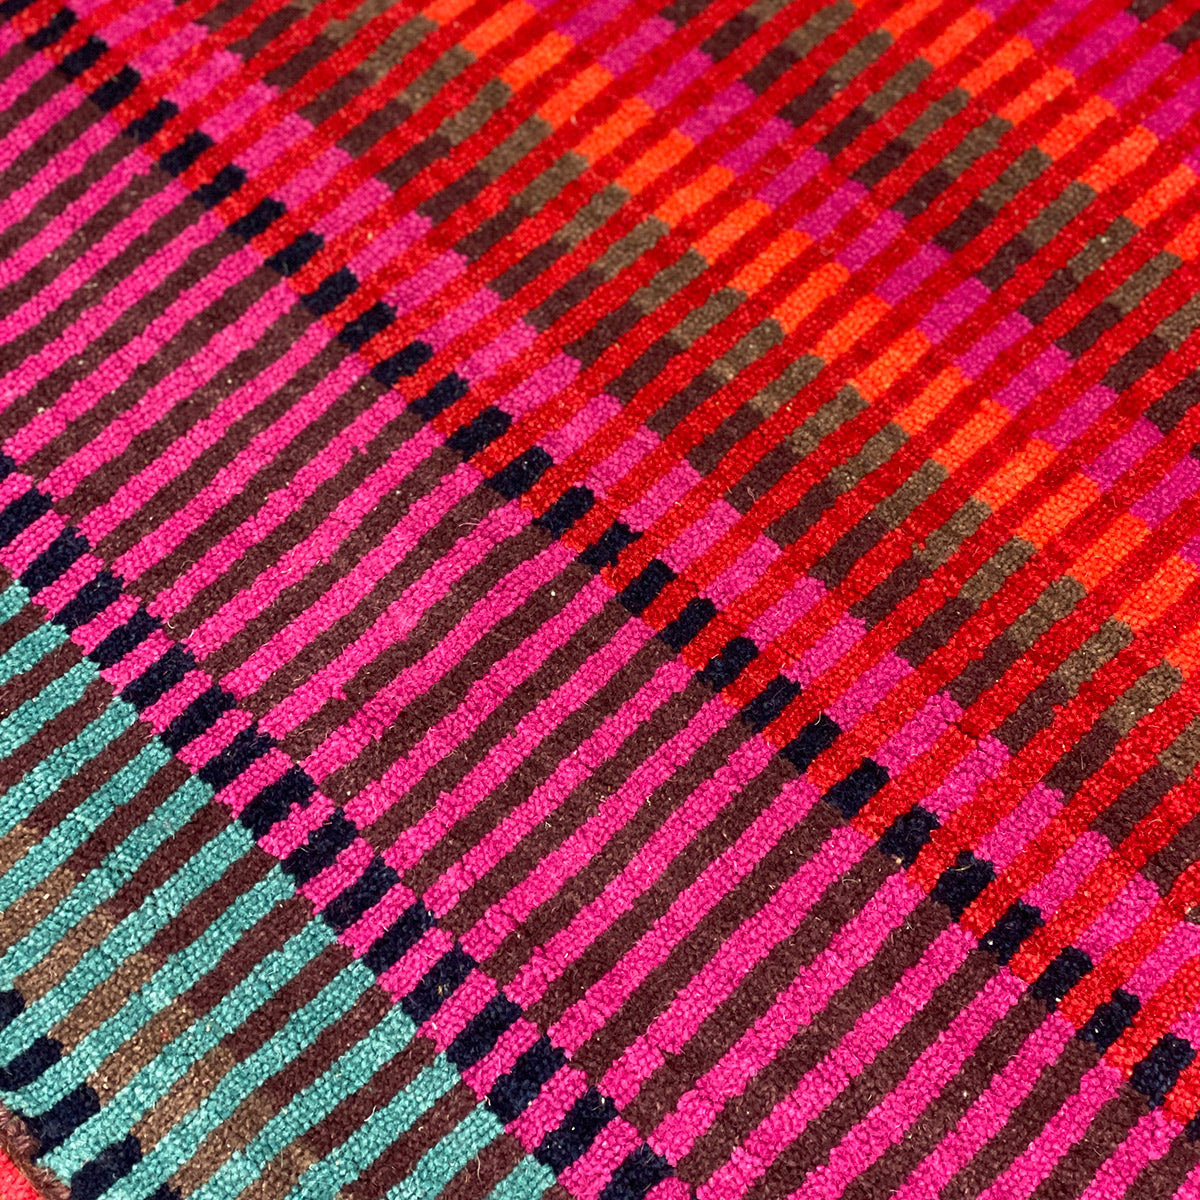 luxury rug, geometric rug, modern rug, wool rug, red rug, designer rugs, colourful rug